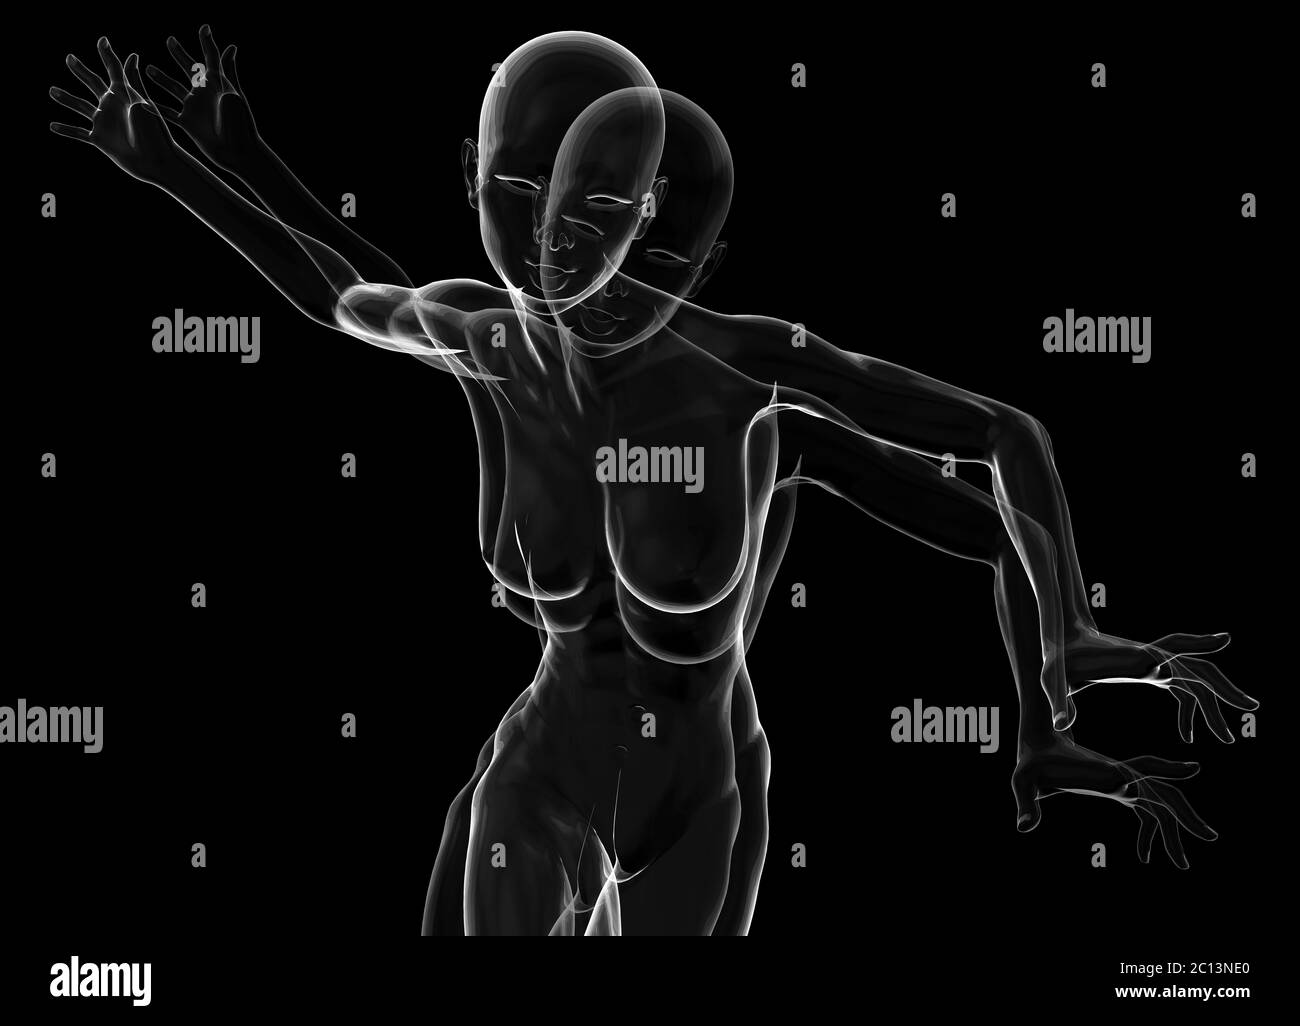 Compact et attrayant, le sportswoman est fait de verre ou de savon moussant sur fond noir. illustration 3d Banque D'Images